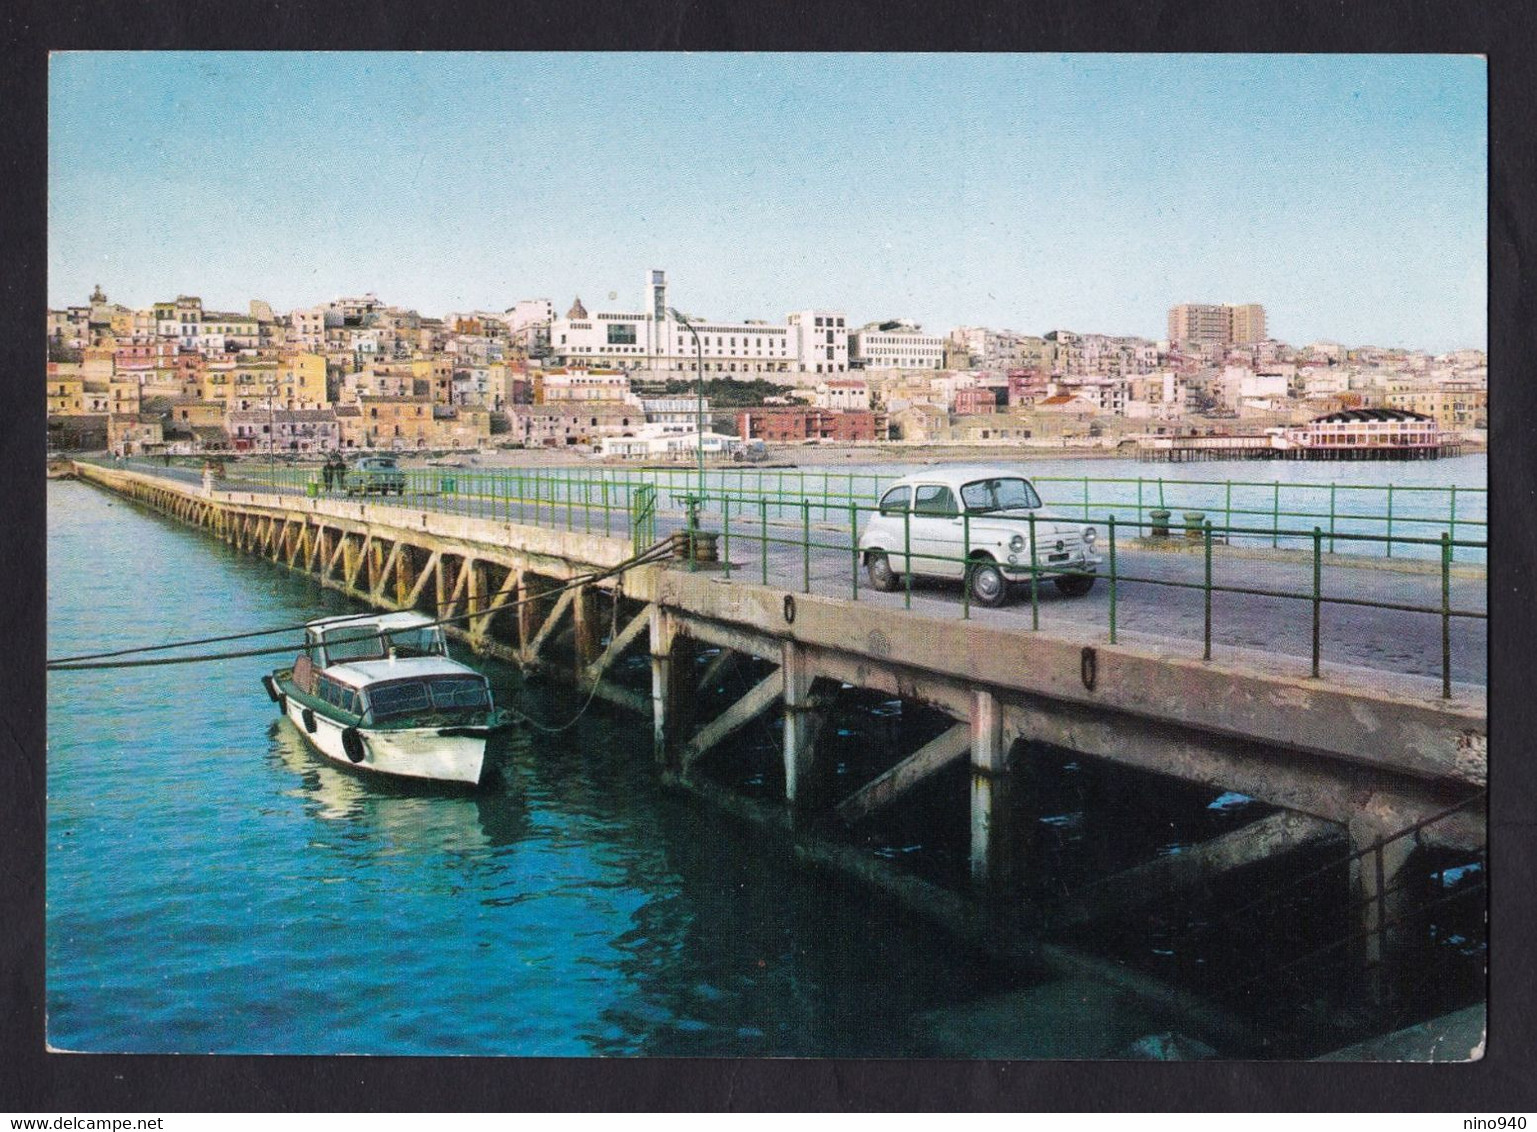 GELA (CL) - Panorama - F/G - V: 1966 - Ponte-auto-imbarcazione - Gela